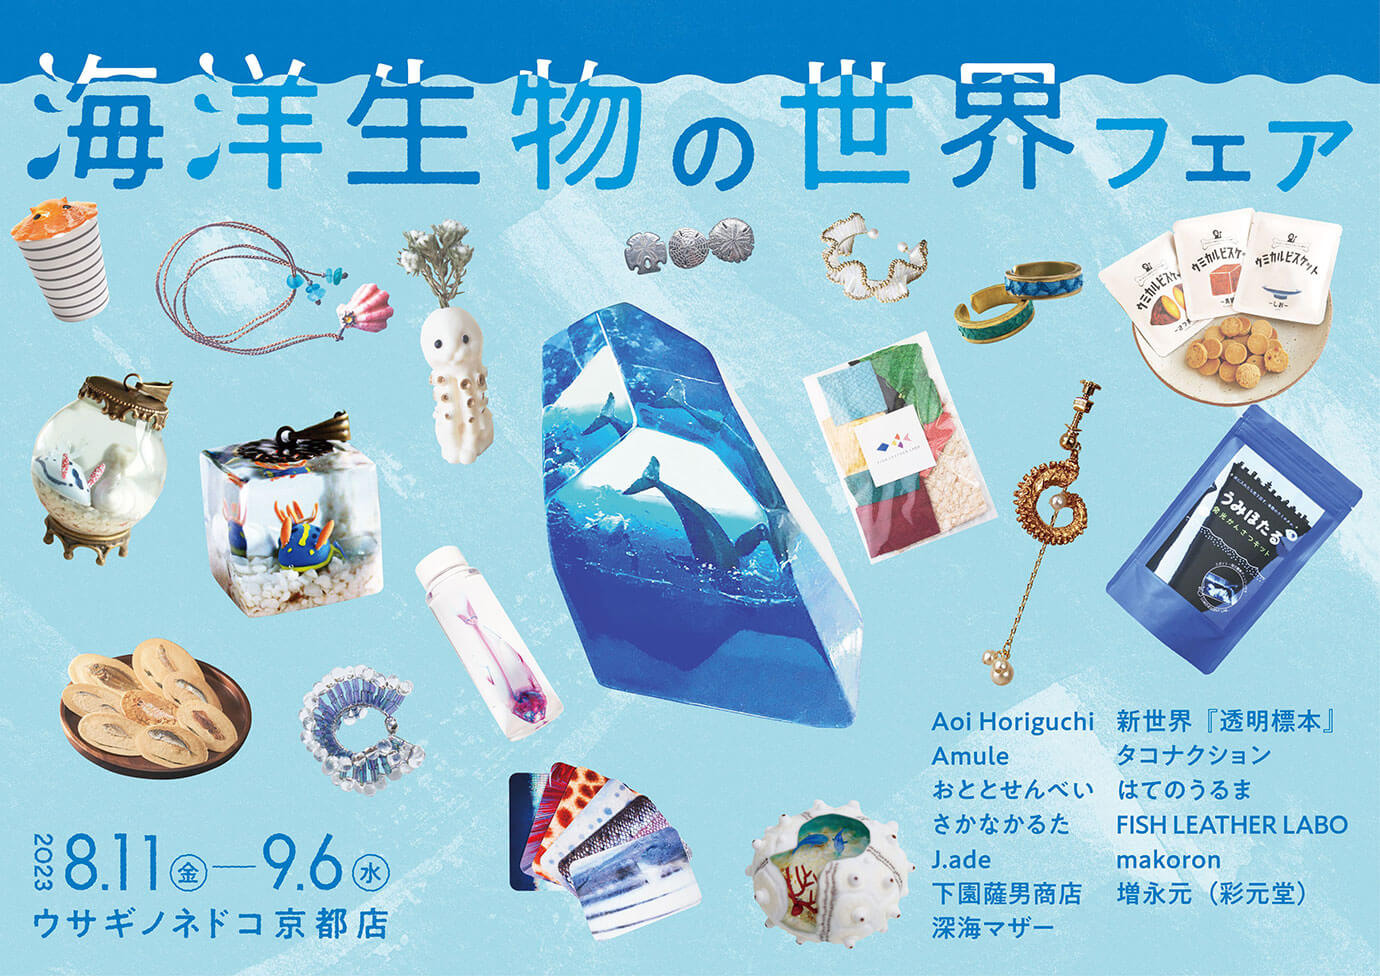 ウサギノネドコ京都店「海洋生物の世界」フェア